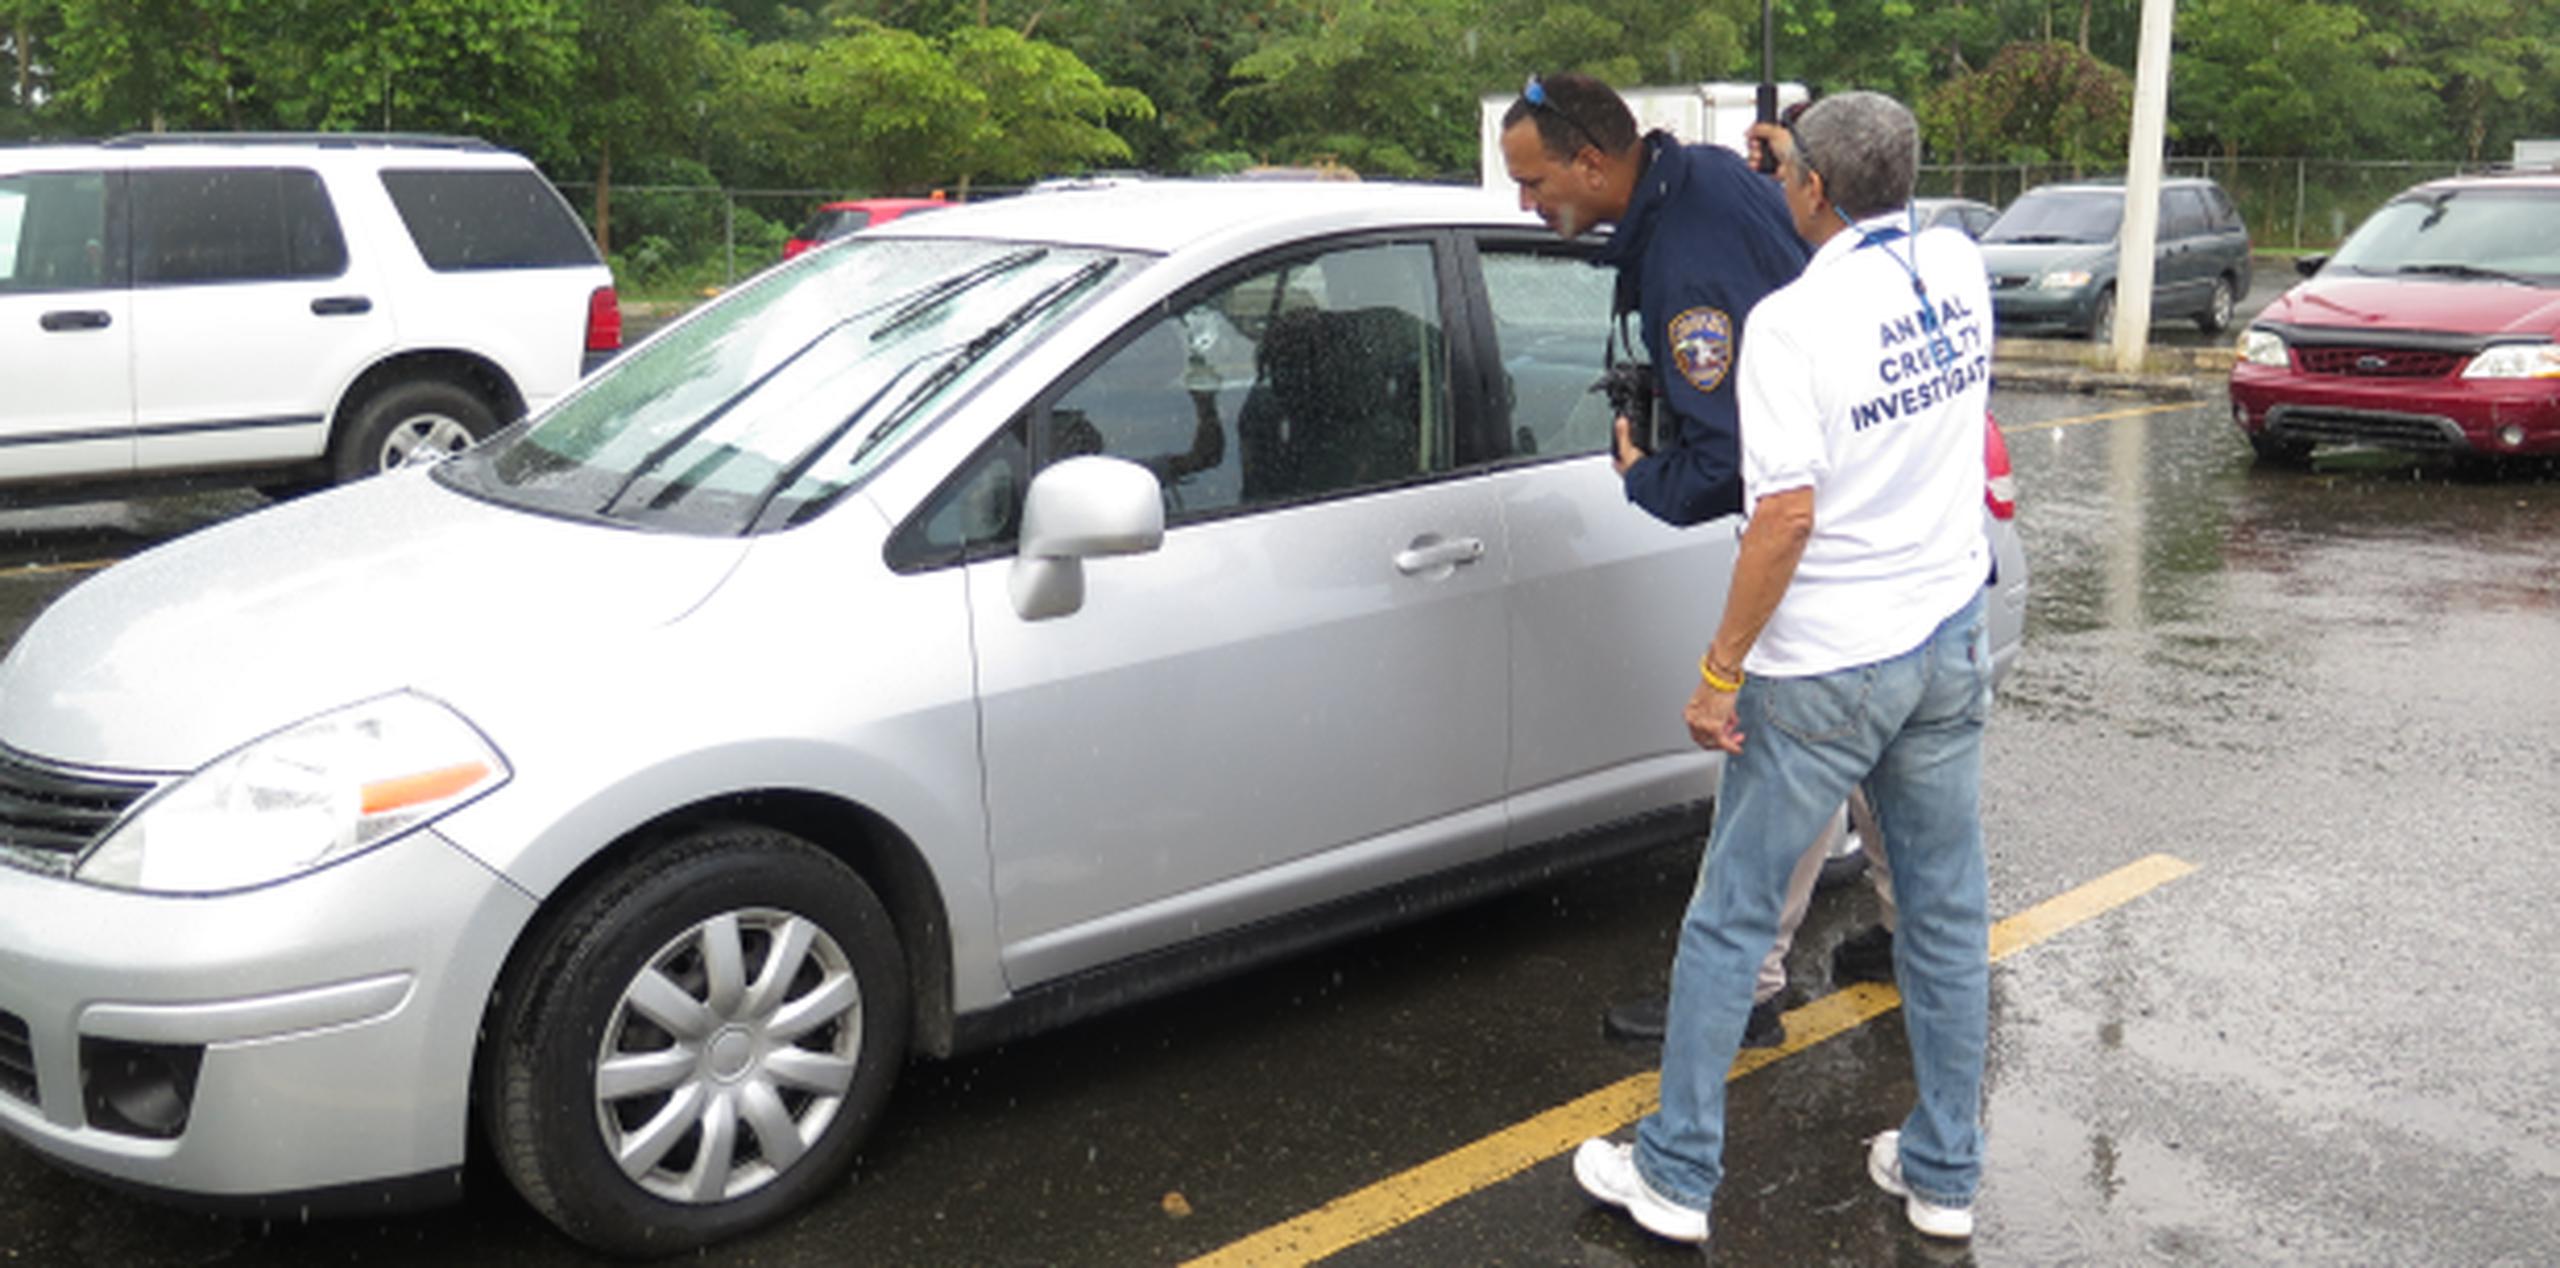 Los hechos ocurrieron en pasado 19 de octubre, a eso de la 11:50 am, en el estacionamiento del Mayagüez Emporium.  (daileen.rodriguez@gfrmedia.com)